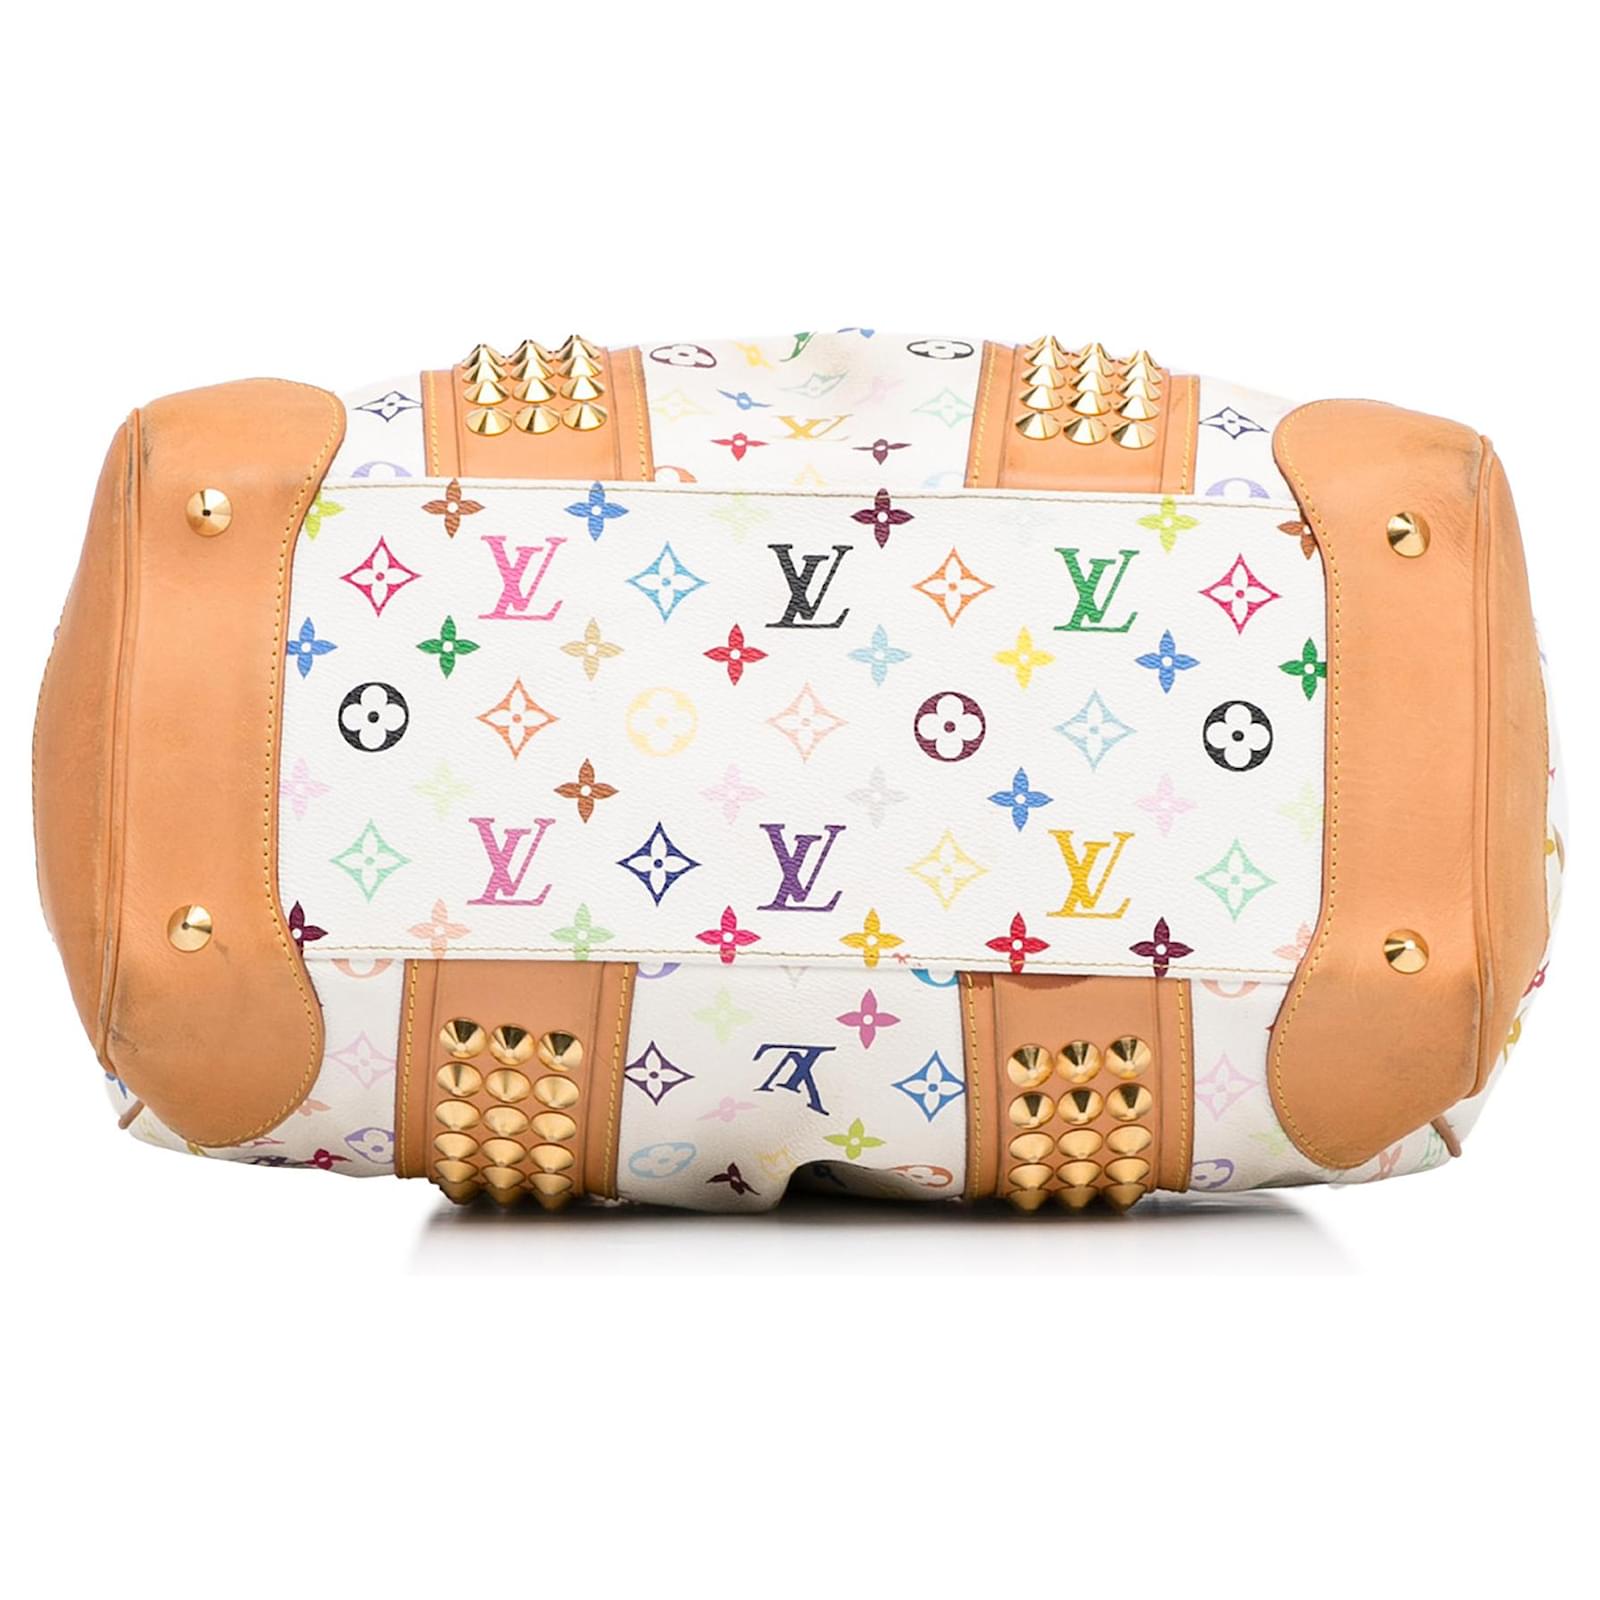 Louis Vuitton Courtney Bag Monogram Multicolor GM